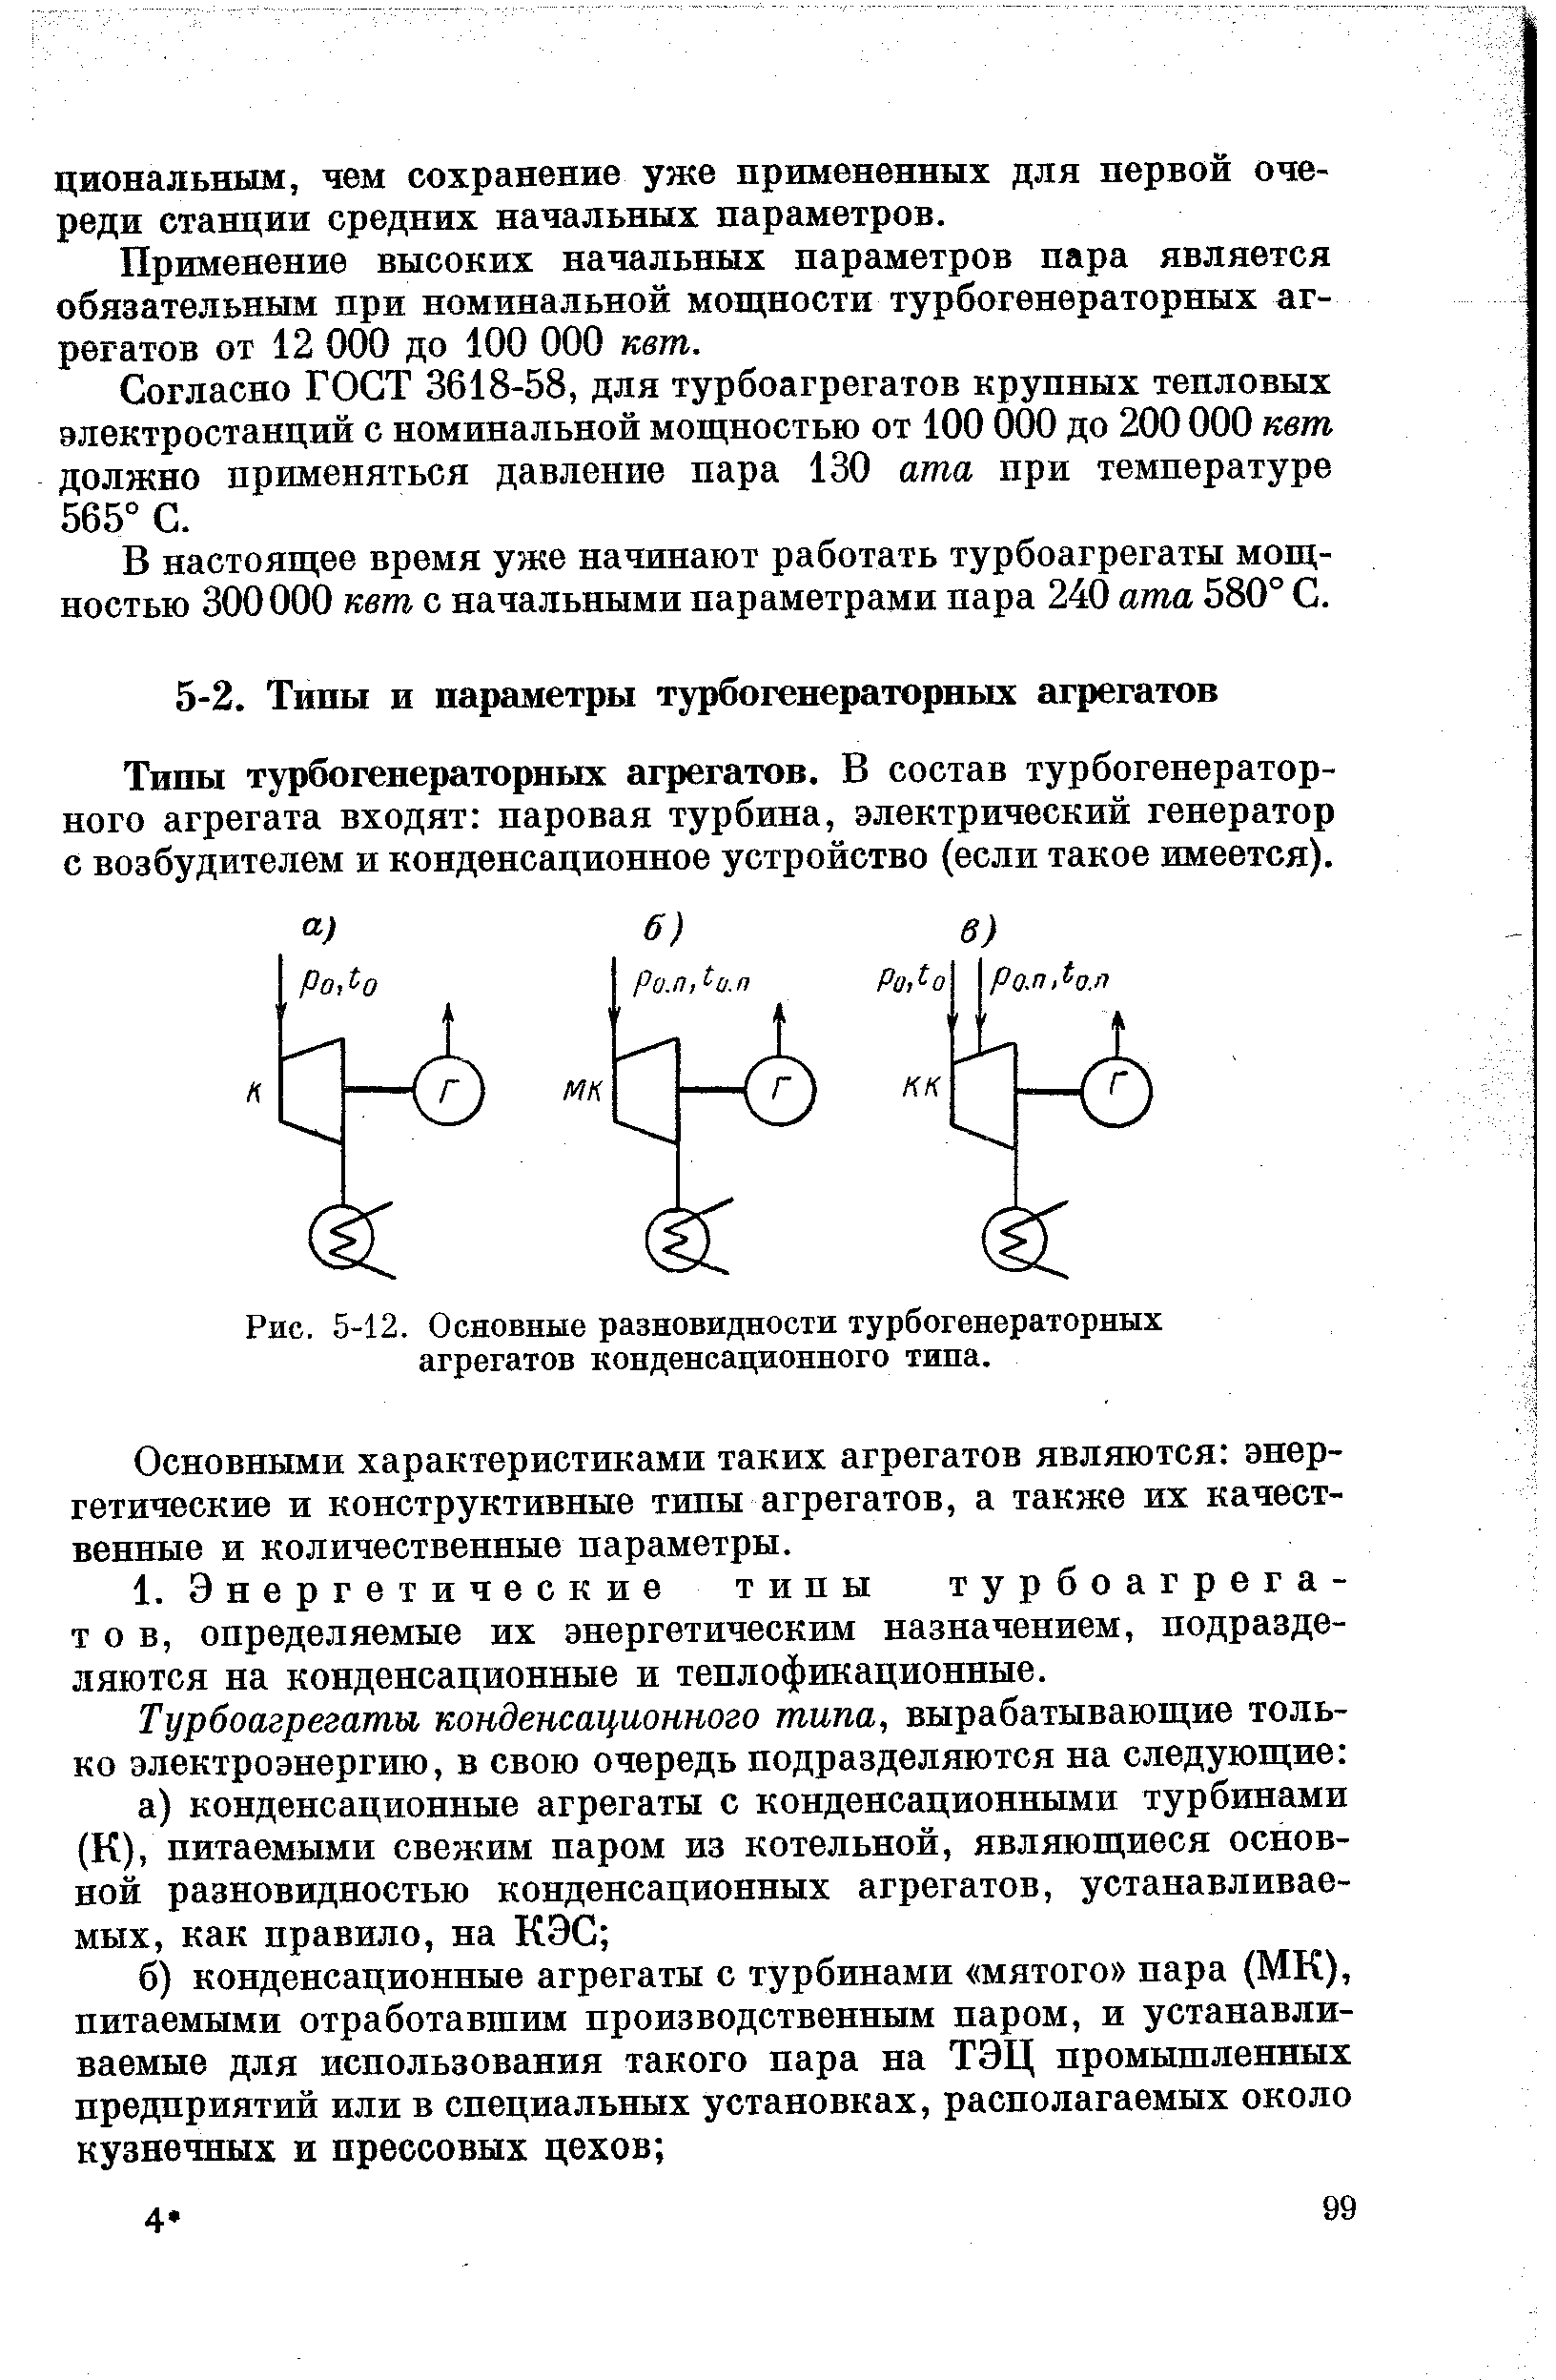 Рис. 5-12. Основные разновидности турбогенераторных агрегатов конденсационного типа.
